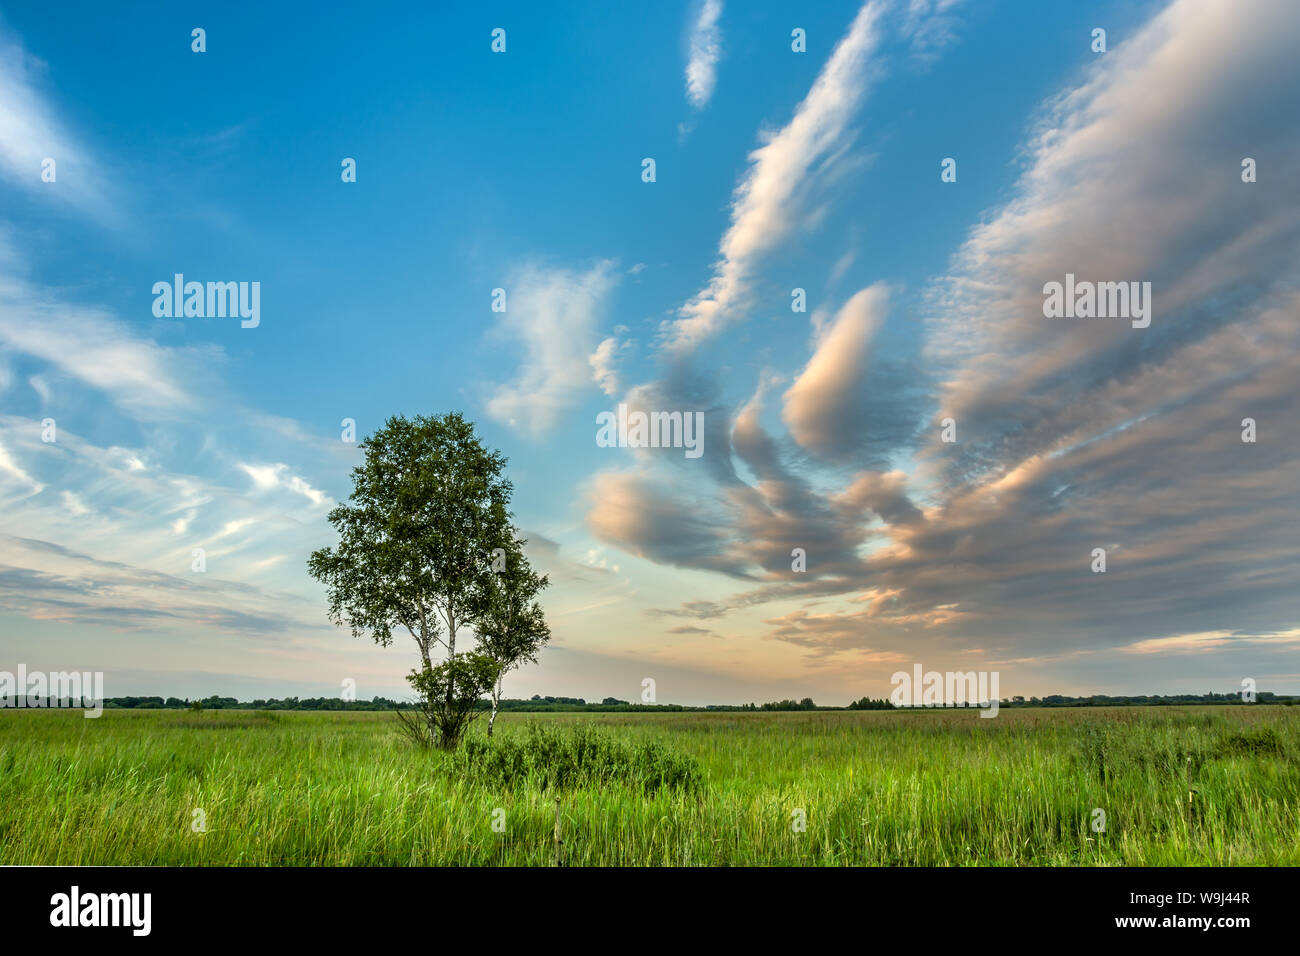 Einsame Birke in einer Wiese und bunten Wolken am blauen Himmel Stockfoto